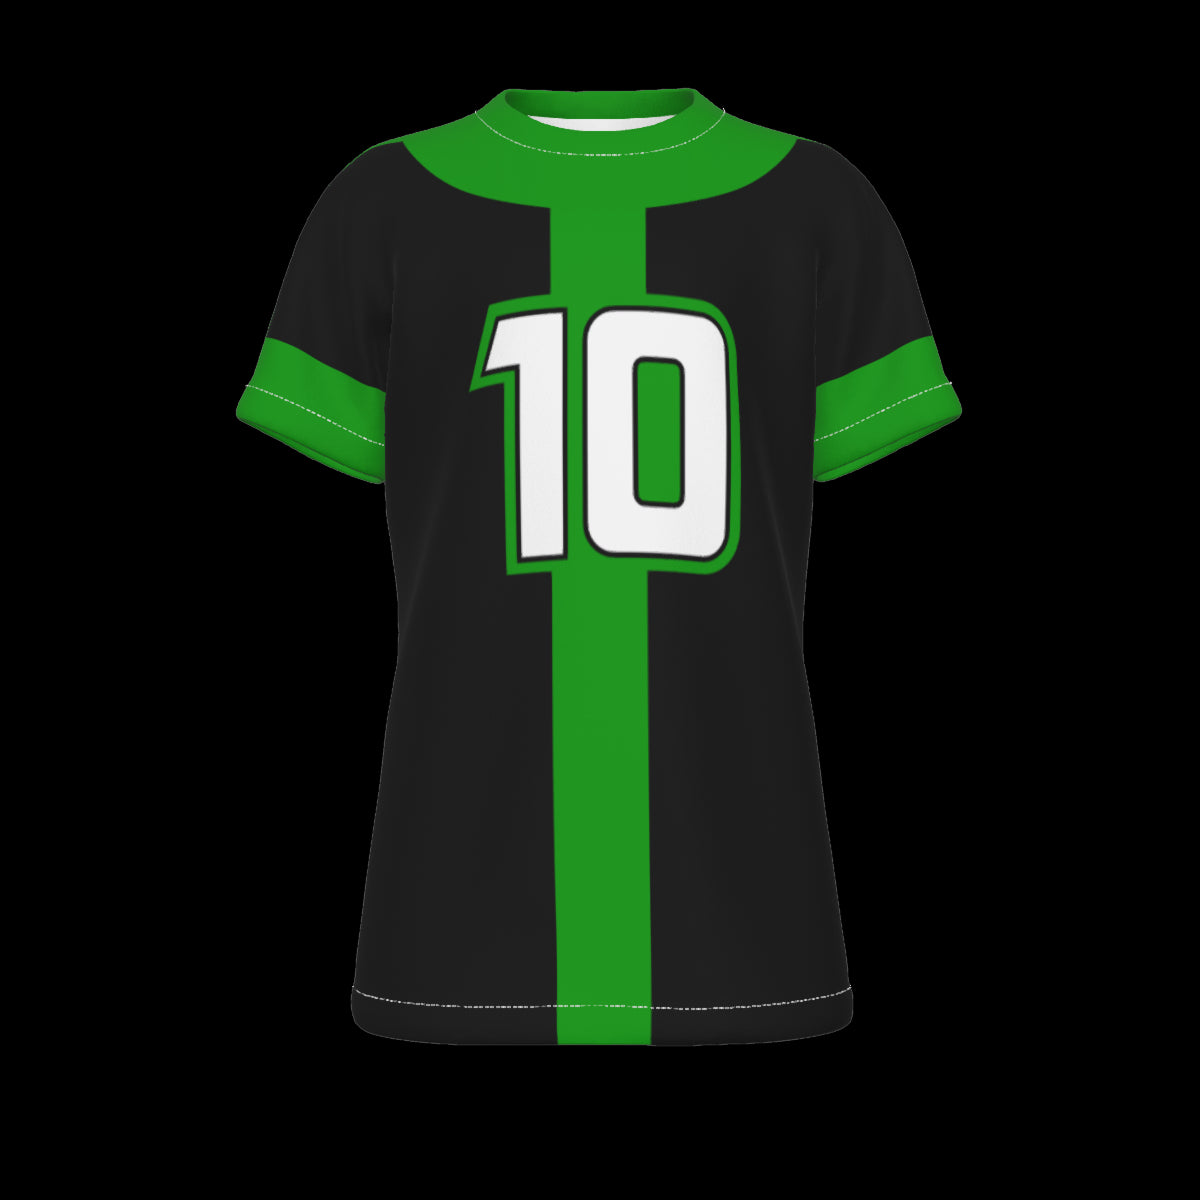 Ben 10 omniverse green and black T-Shirt black t shirts t shirt